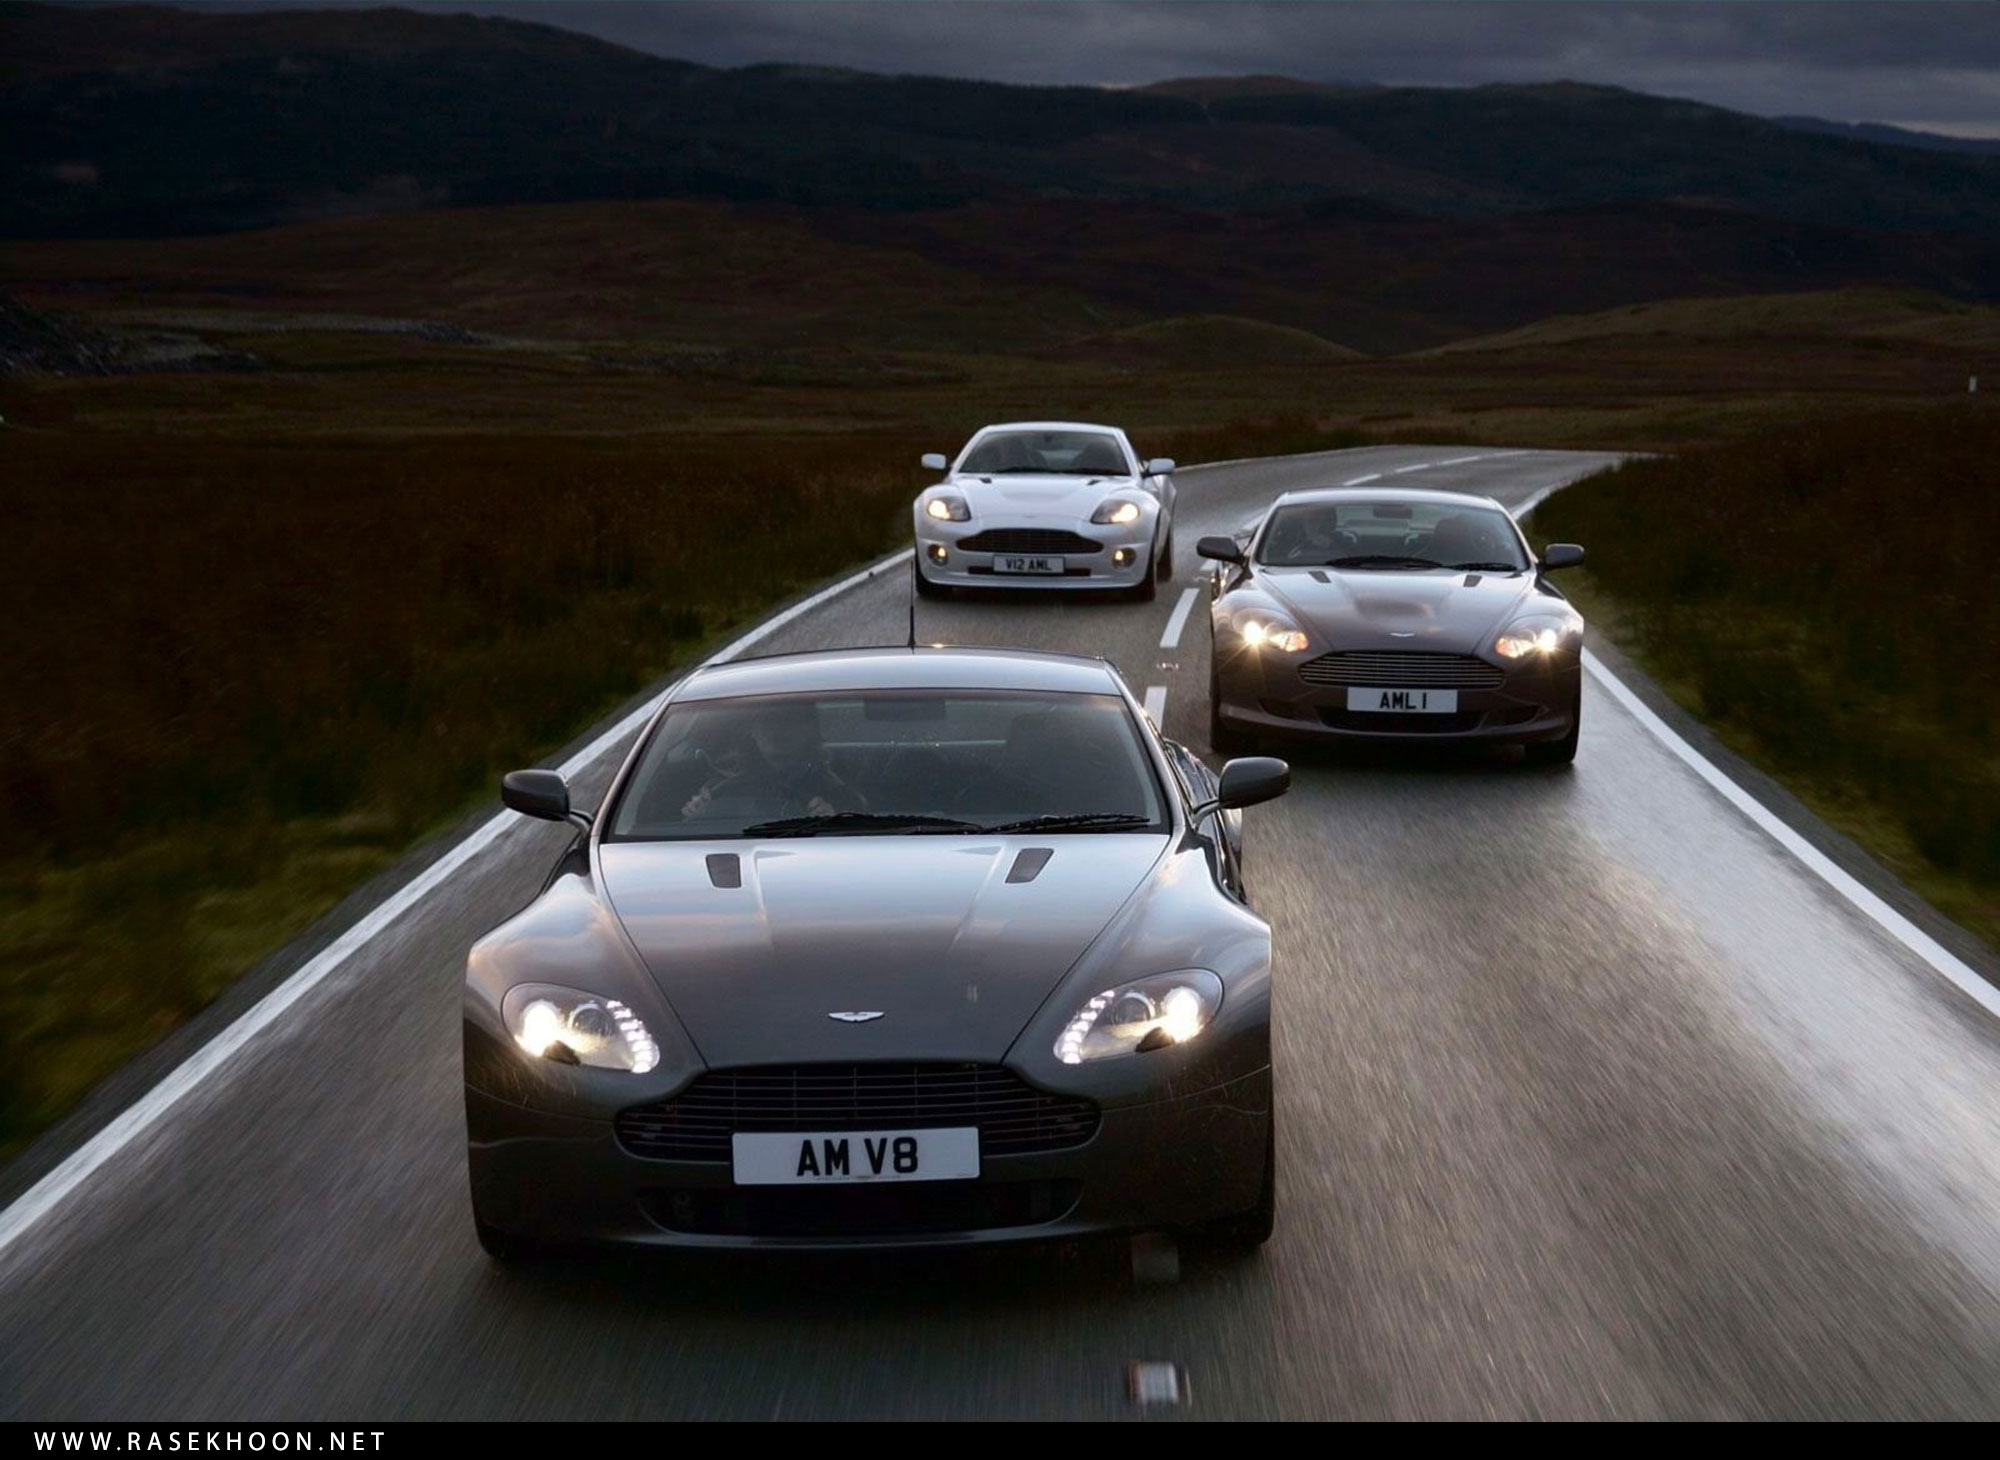 Автомобиль на прямолинейной дороге. "Aston Martin" "Virage" "1989" RX. Дорогие машины.